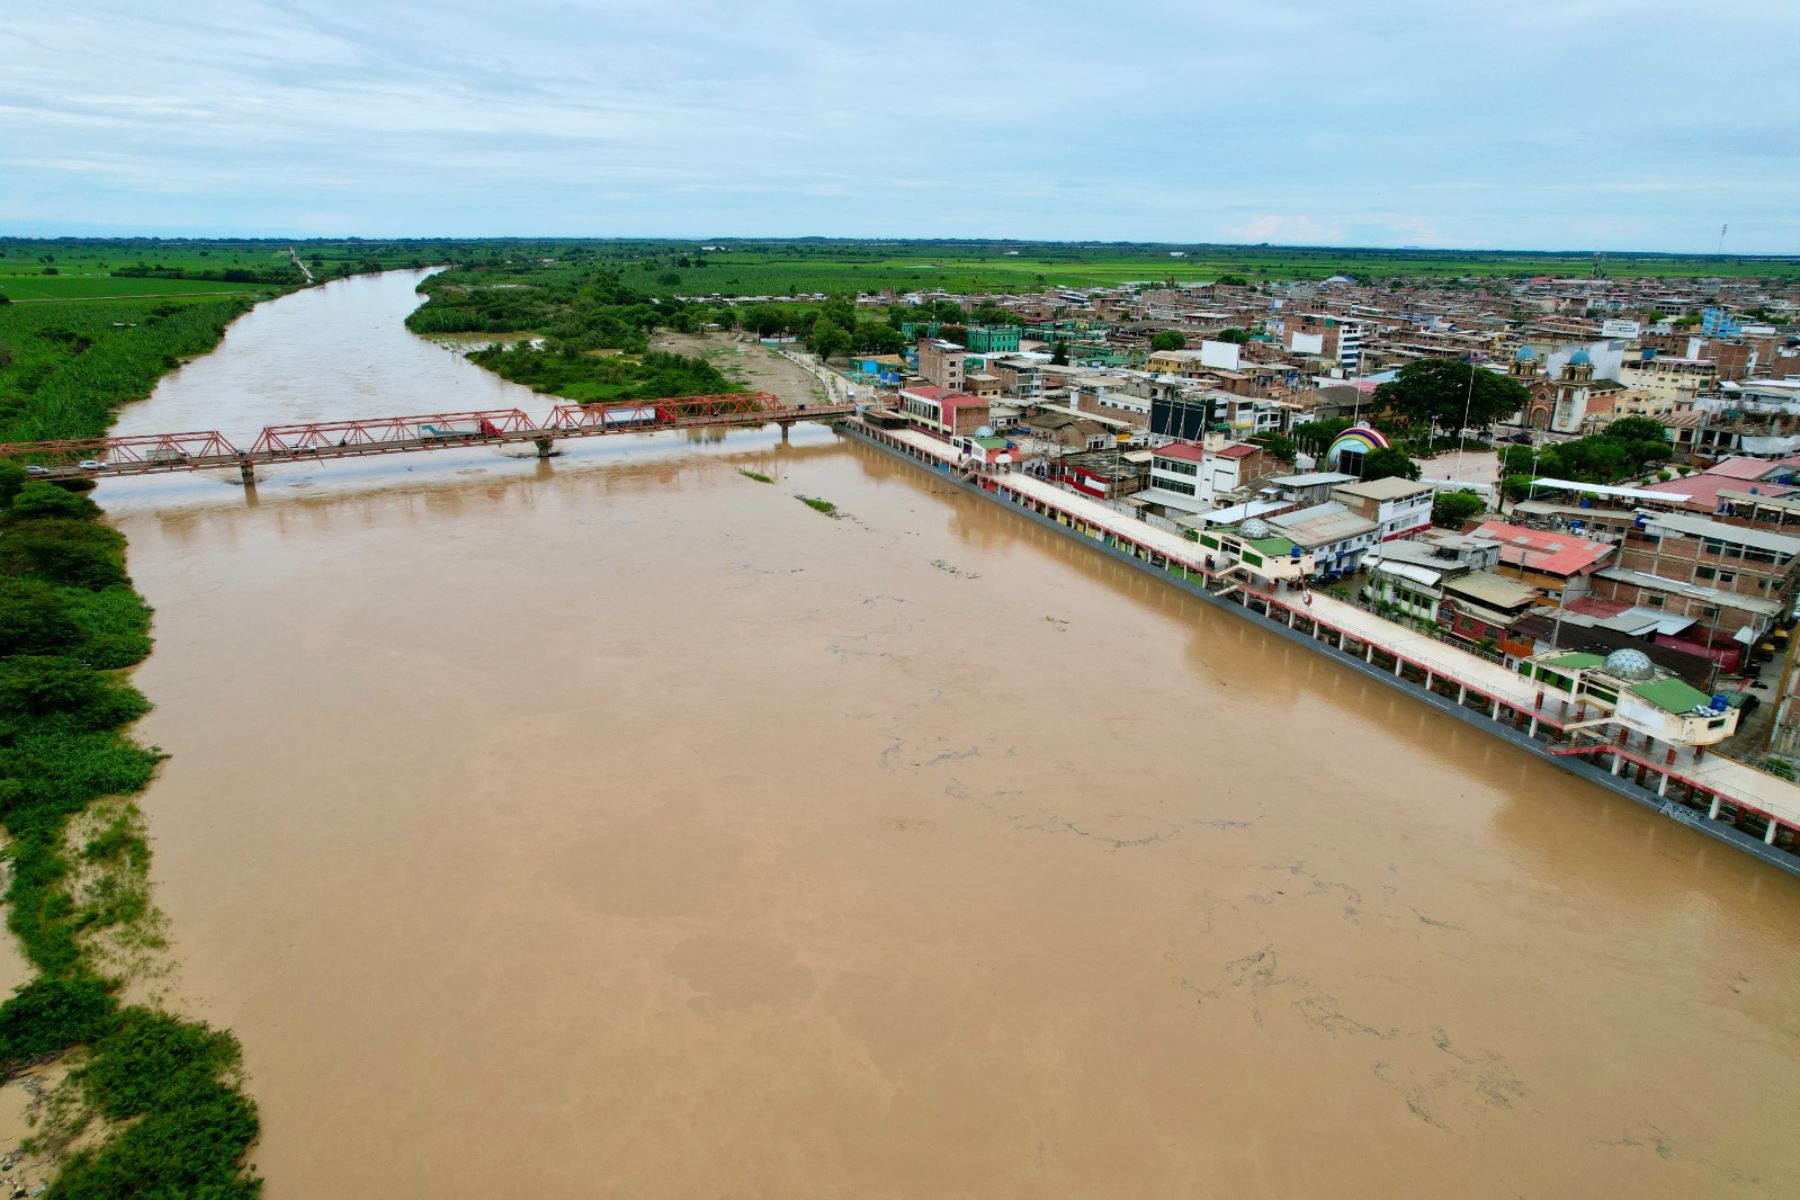 La ciudad de Tumbes se encuentra en alerta ante el incremento del caudal del río Tumbes que podría causar desbordes. ANDINA/Ricardo Cuba